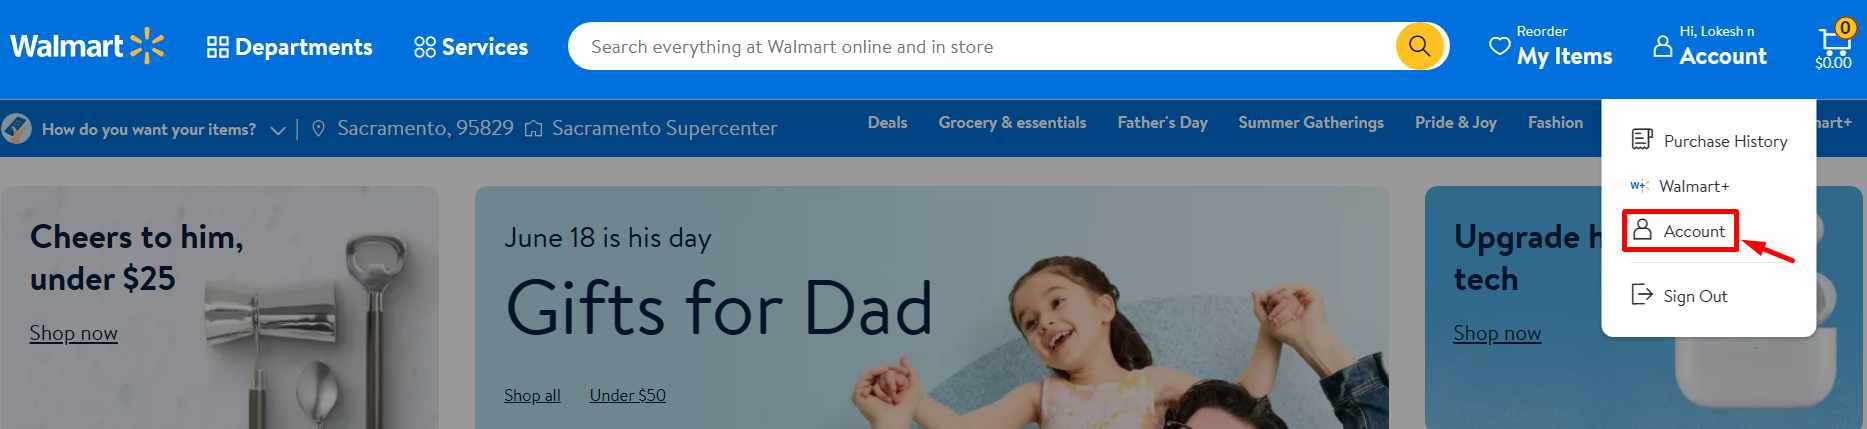 Walmart website Account option